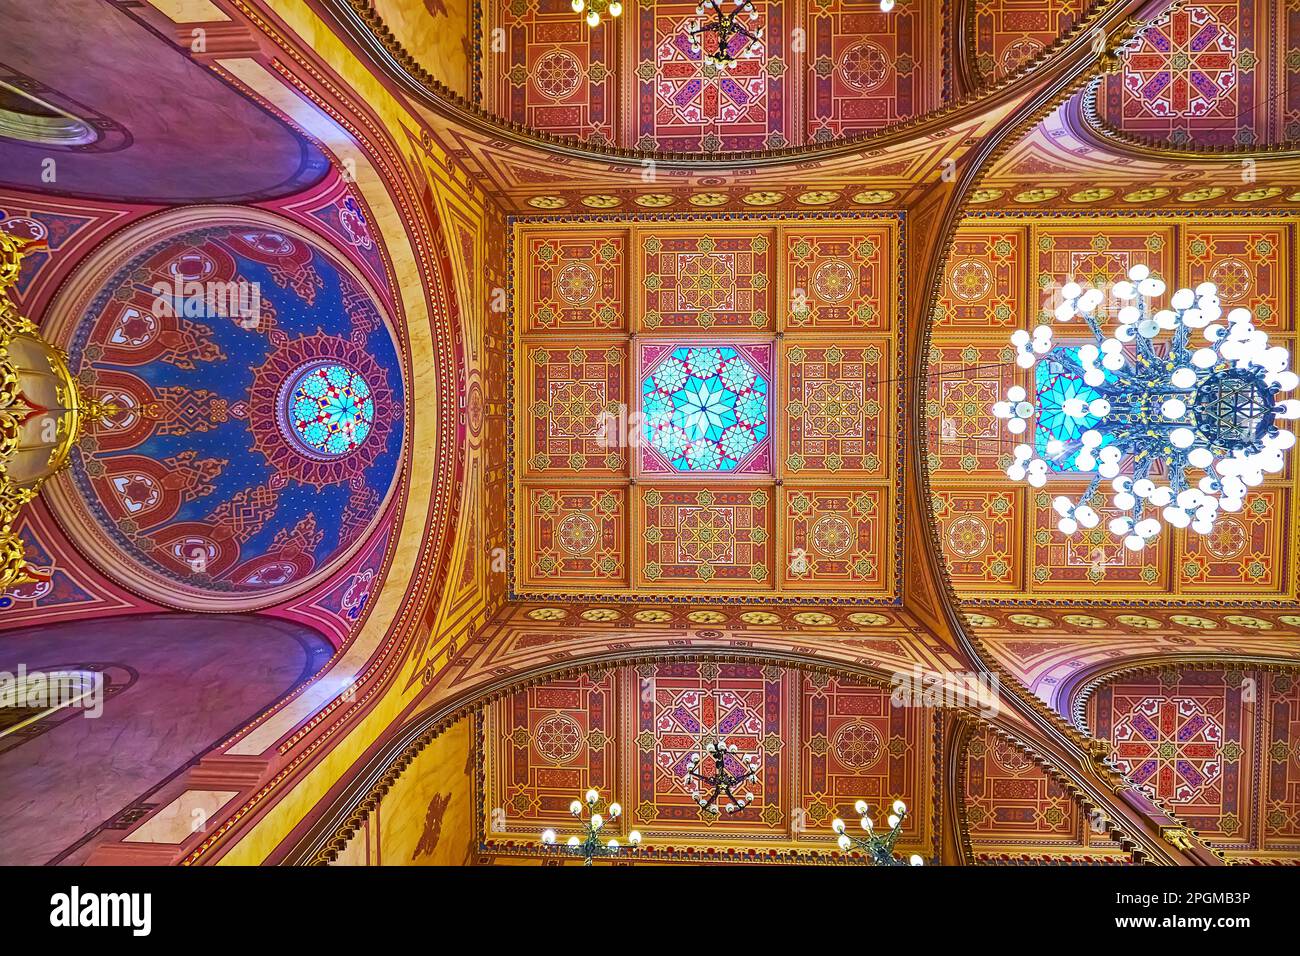 BUDAPEST, UNGARN - 22. FEBRUAR 2022: Die Synagoge der Dohany-Straße verfügt über eine außergewöhnlich reich verzierte Decke mit ockerfarbenen Gamma-Mustern, Schnitzereien und Glaskauz Stockfoto